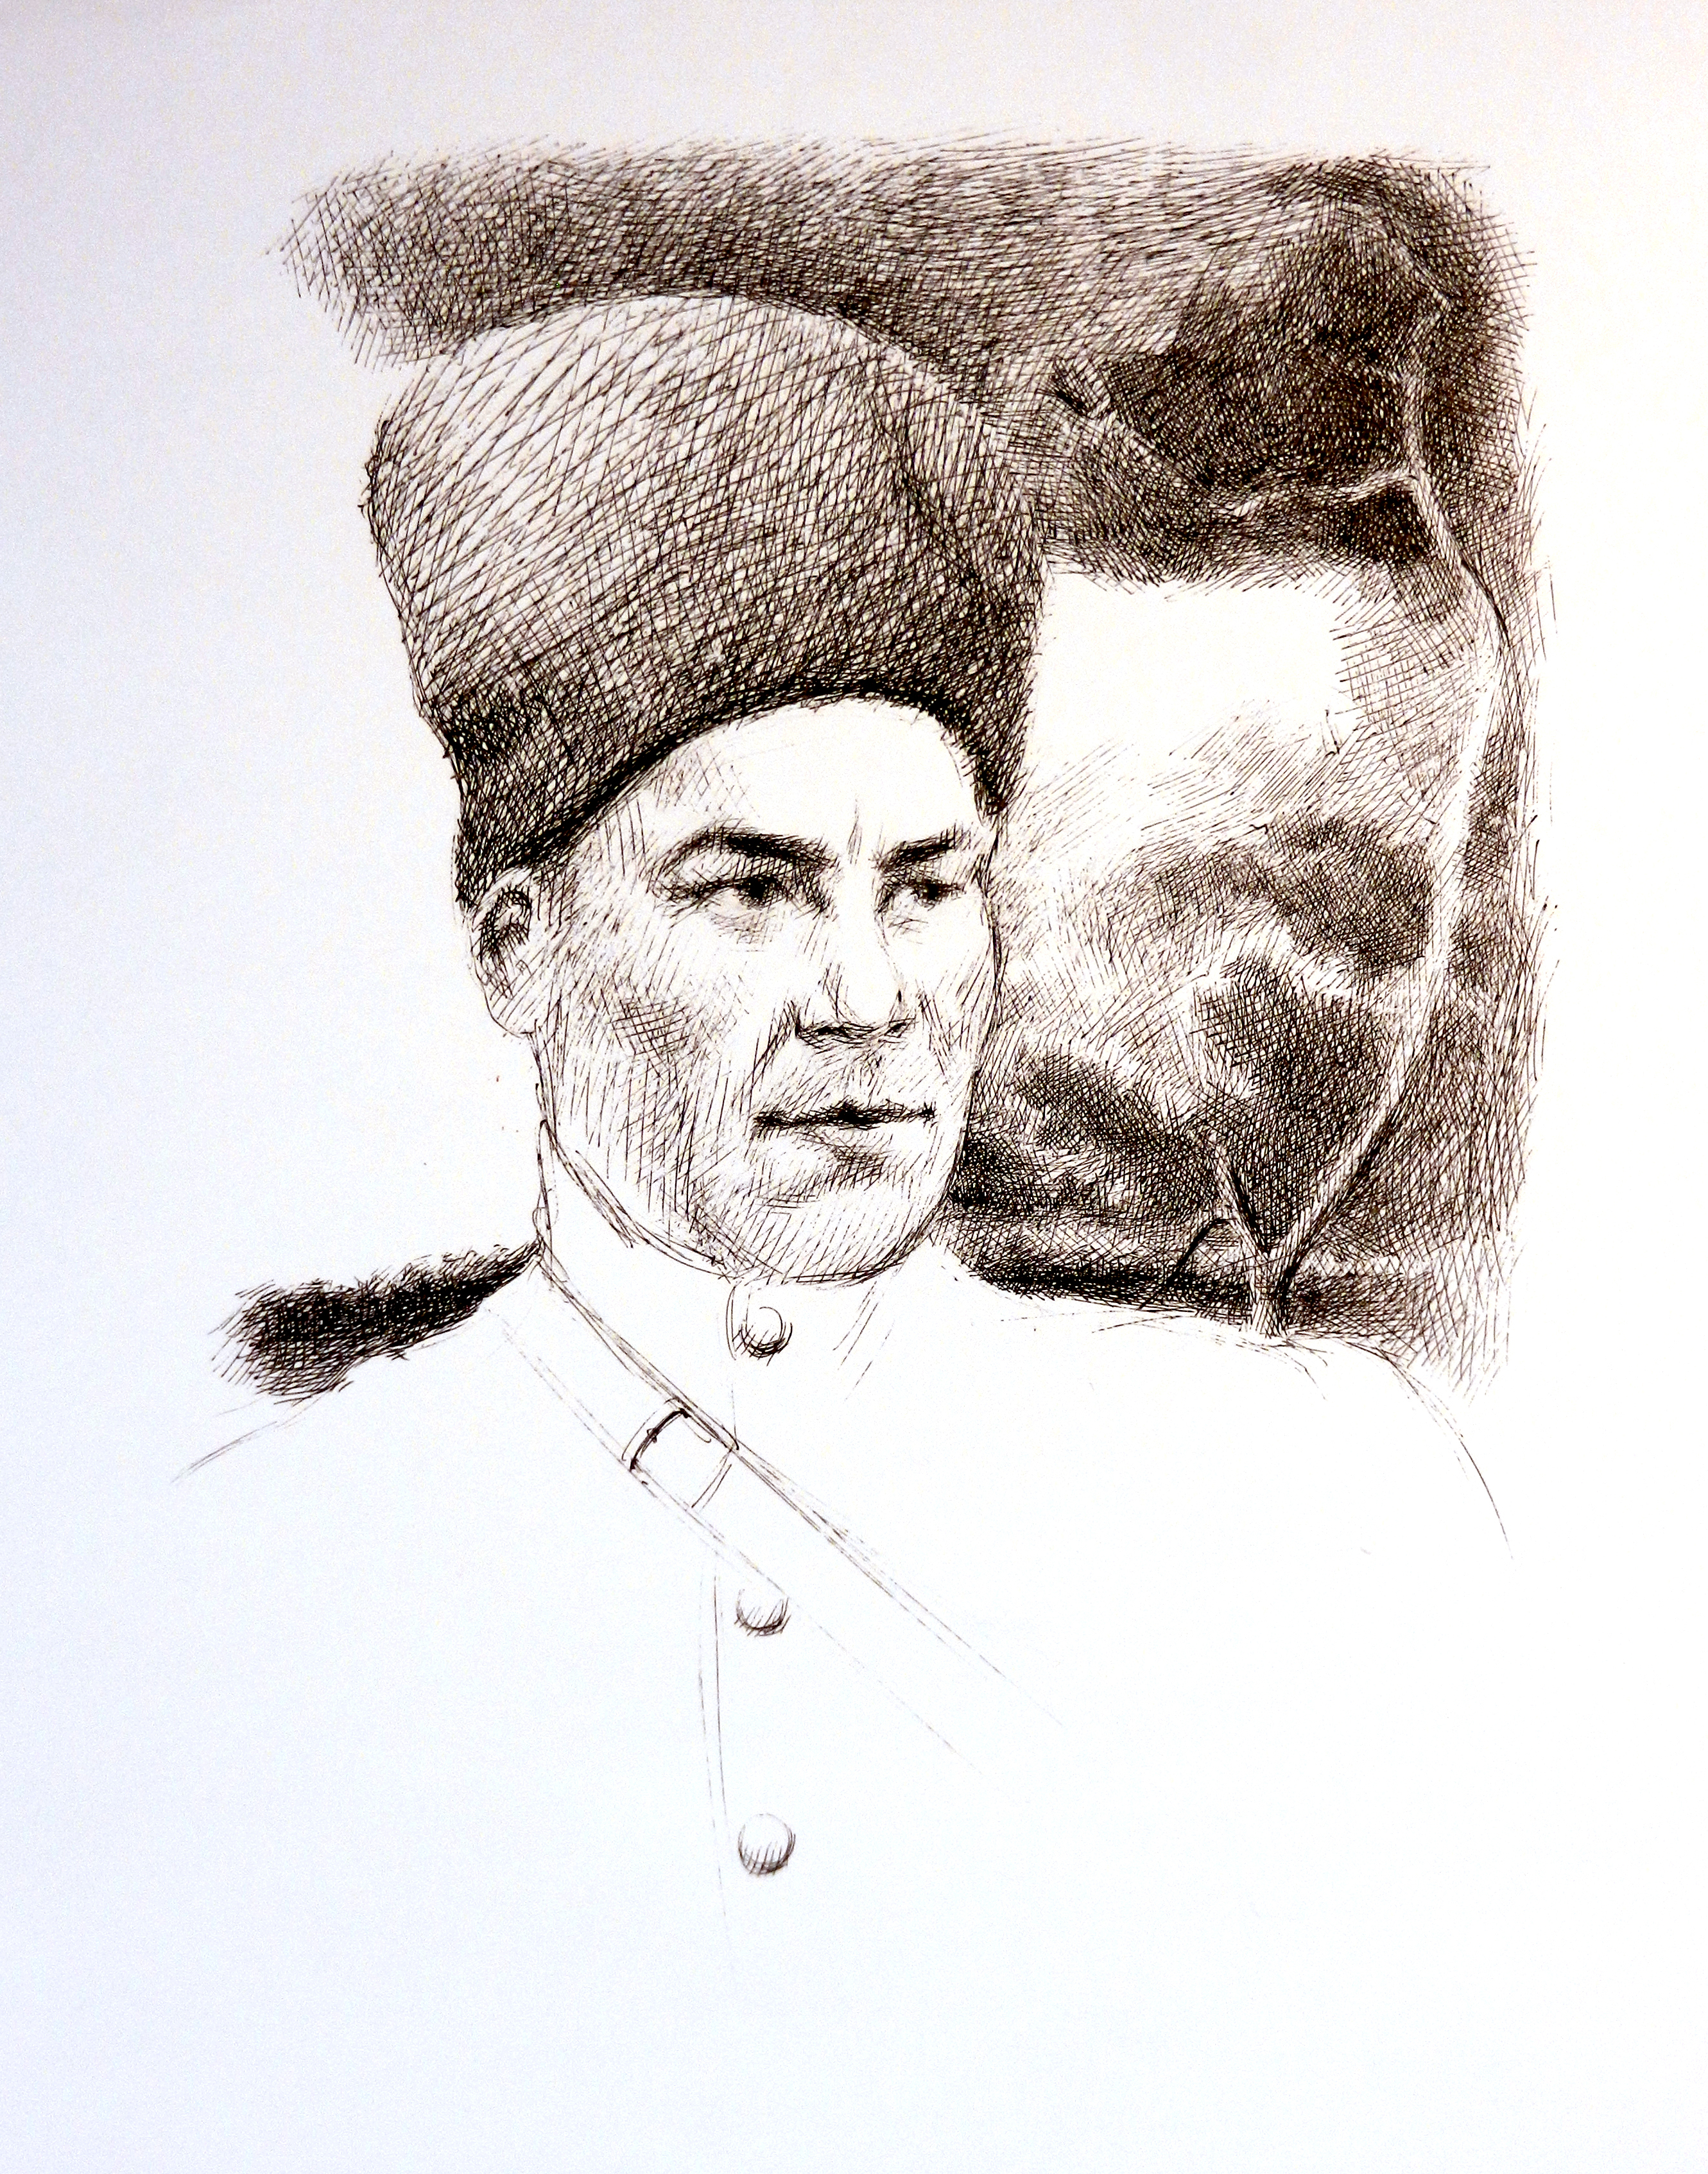 Вафа Әхмәҙуллиндың портреты.  Рәссам – Юлай Әминев